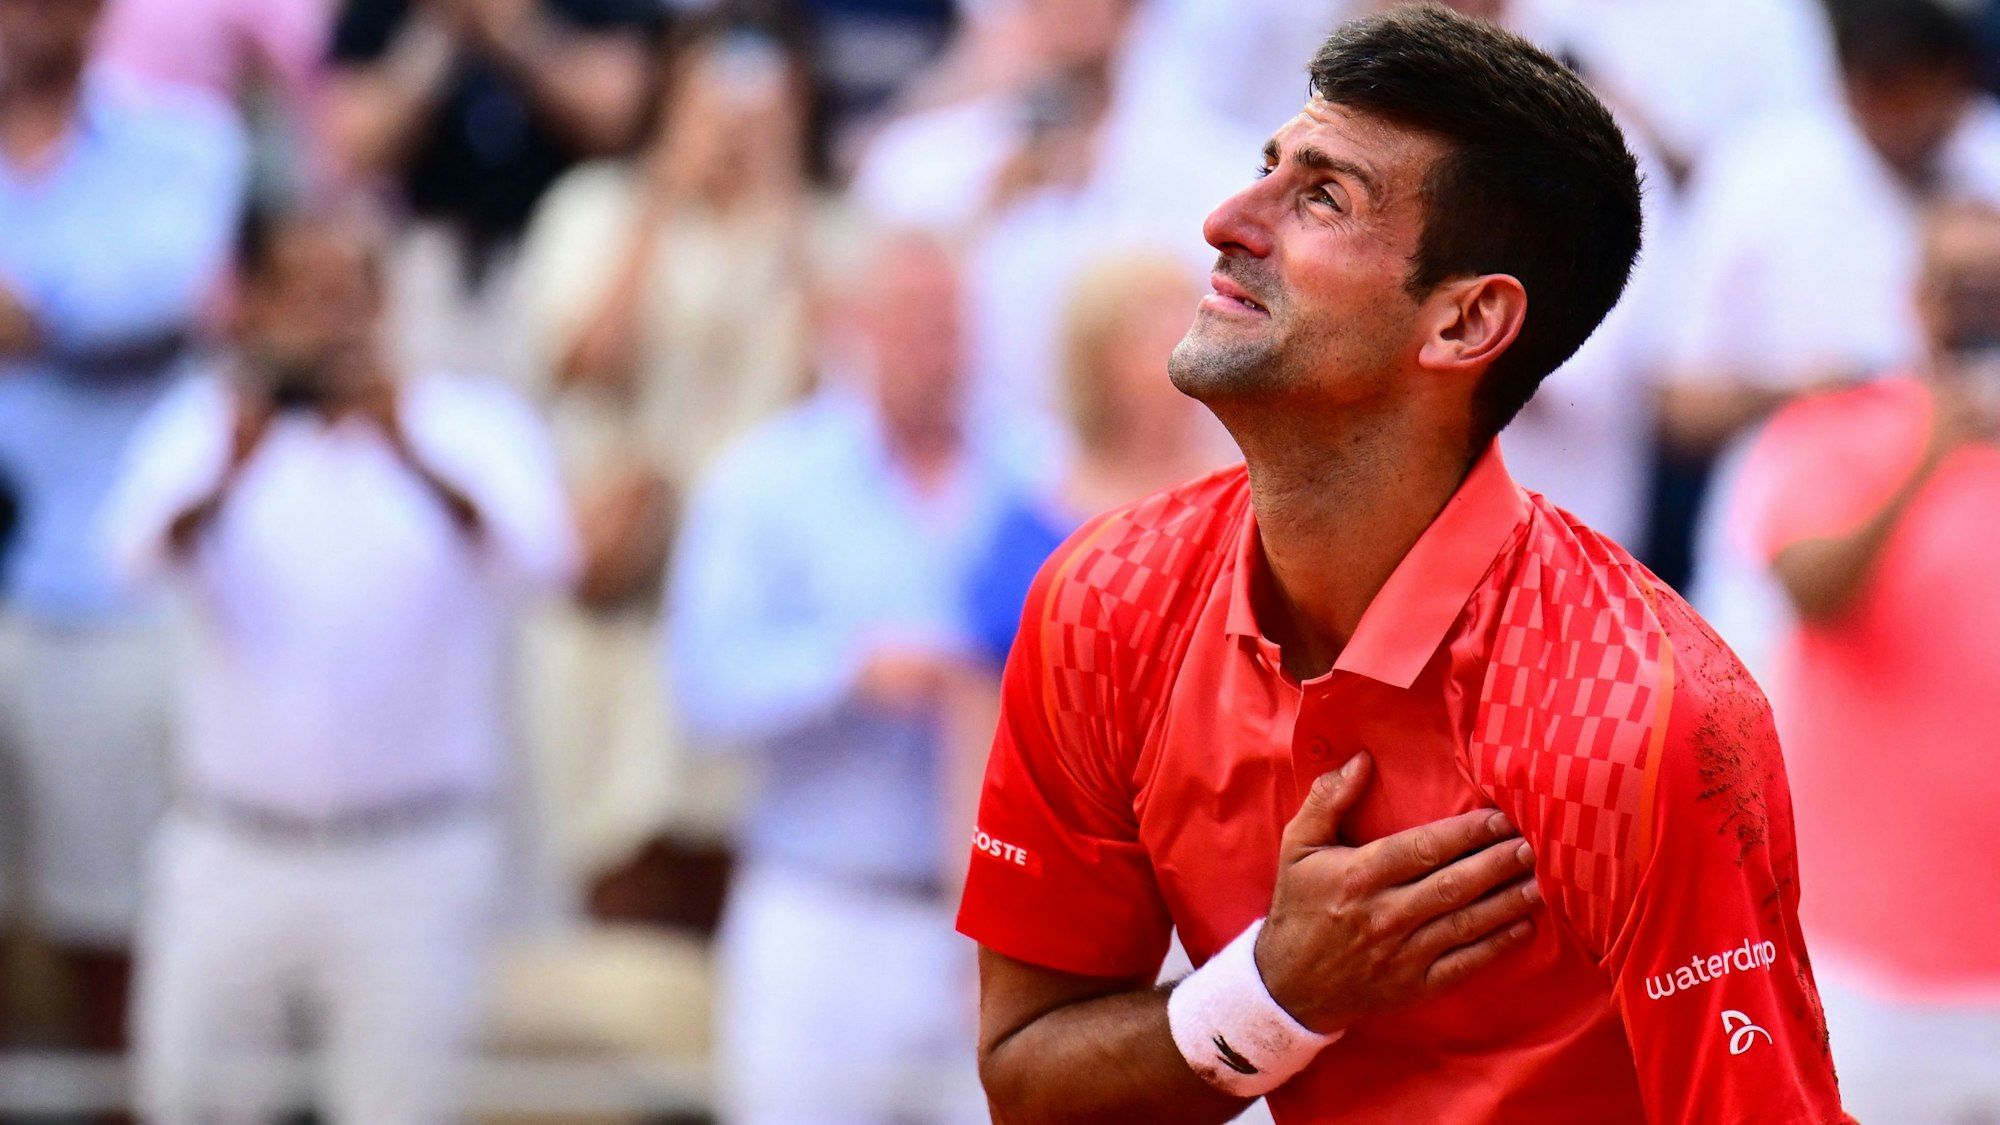 Novak Djokovic bedankt sich beim Publikum, er hat Tränen in den Augen.